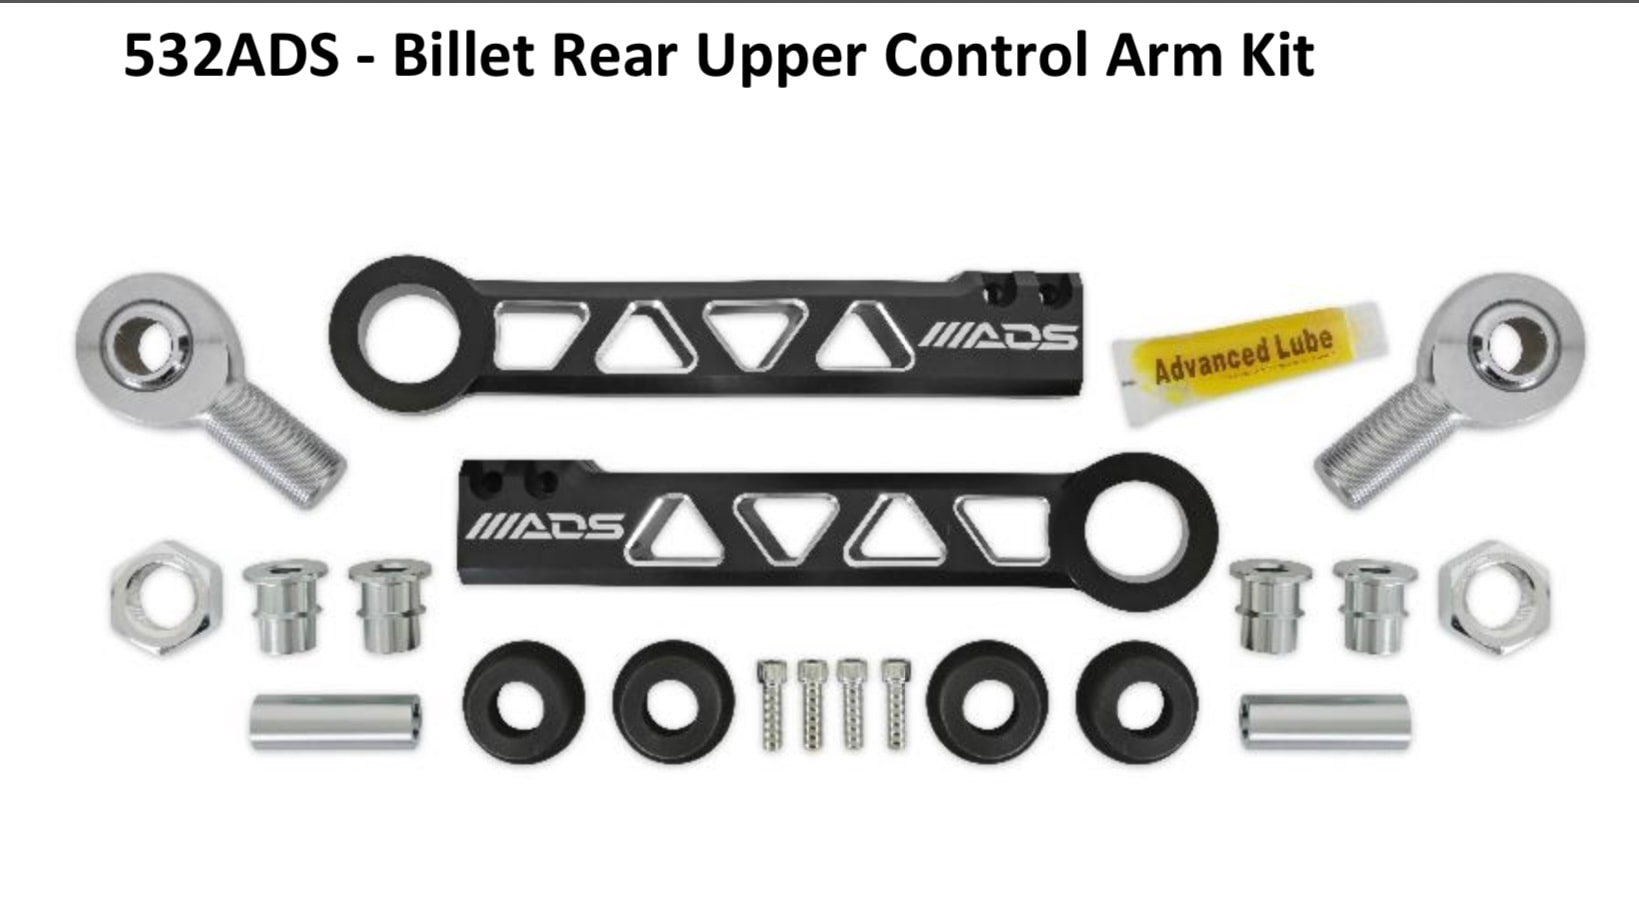 Bronco- ADS- Billet Rear Upper Control Arm Kit